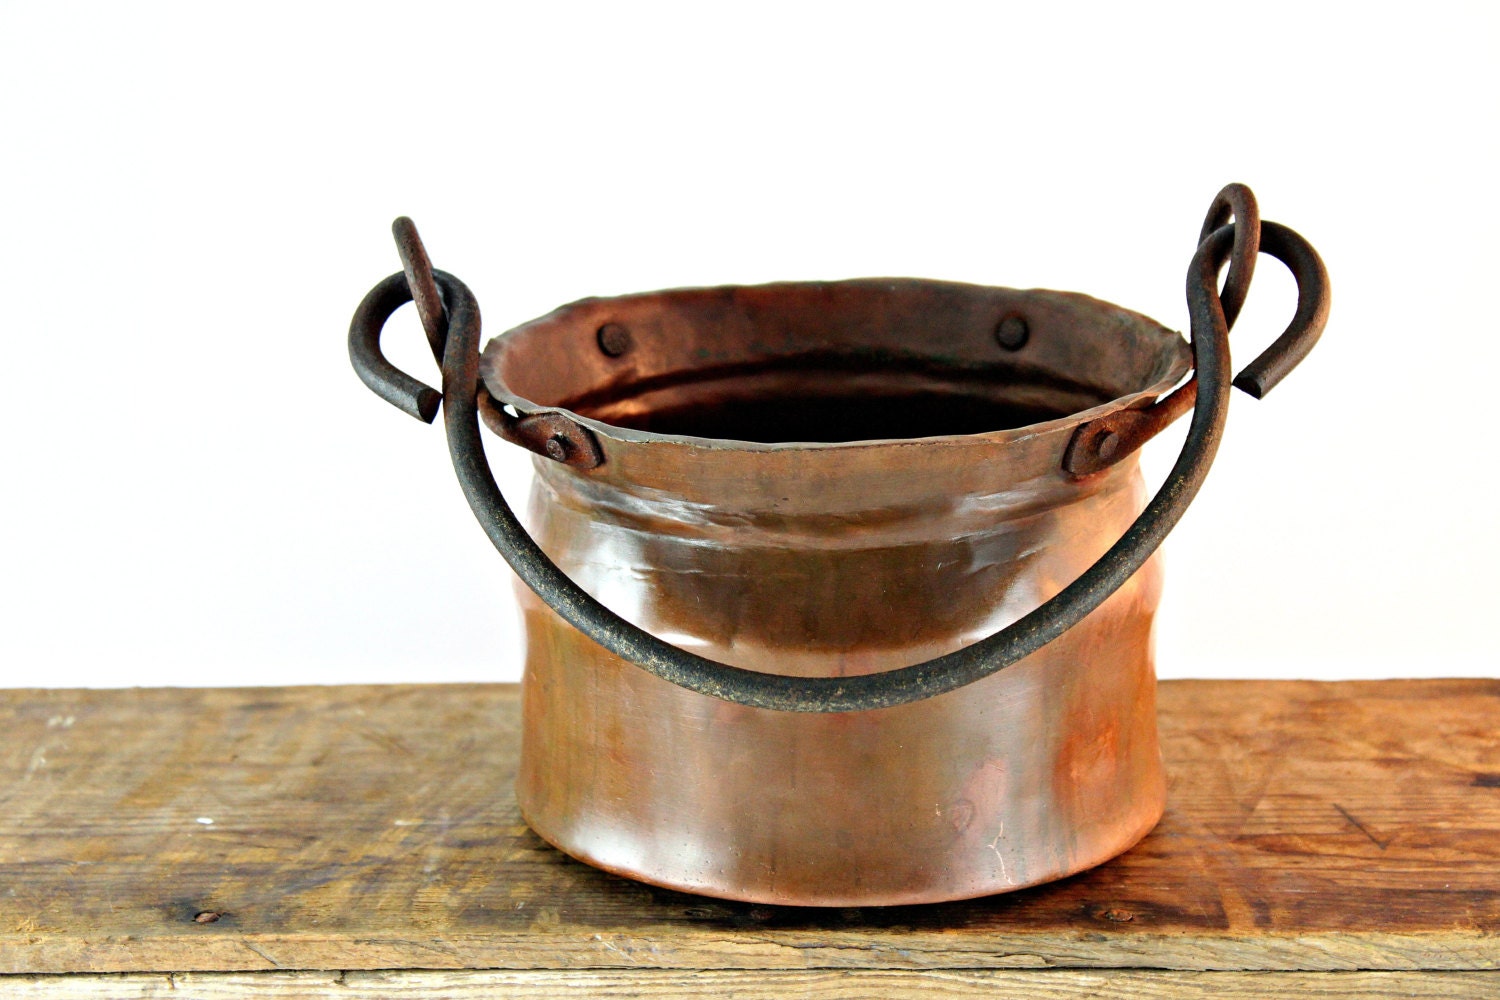  Small  Copper  Bucket Small  Copper  Pail Rustic Copper  Pot 